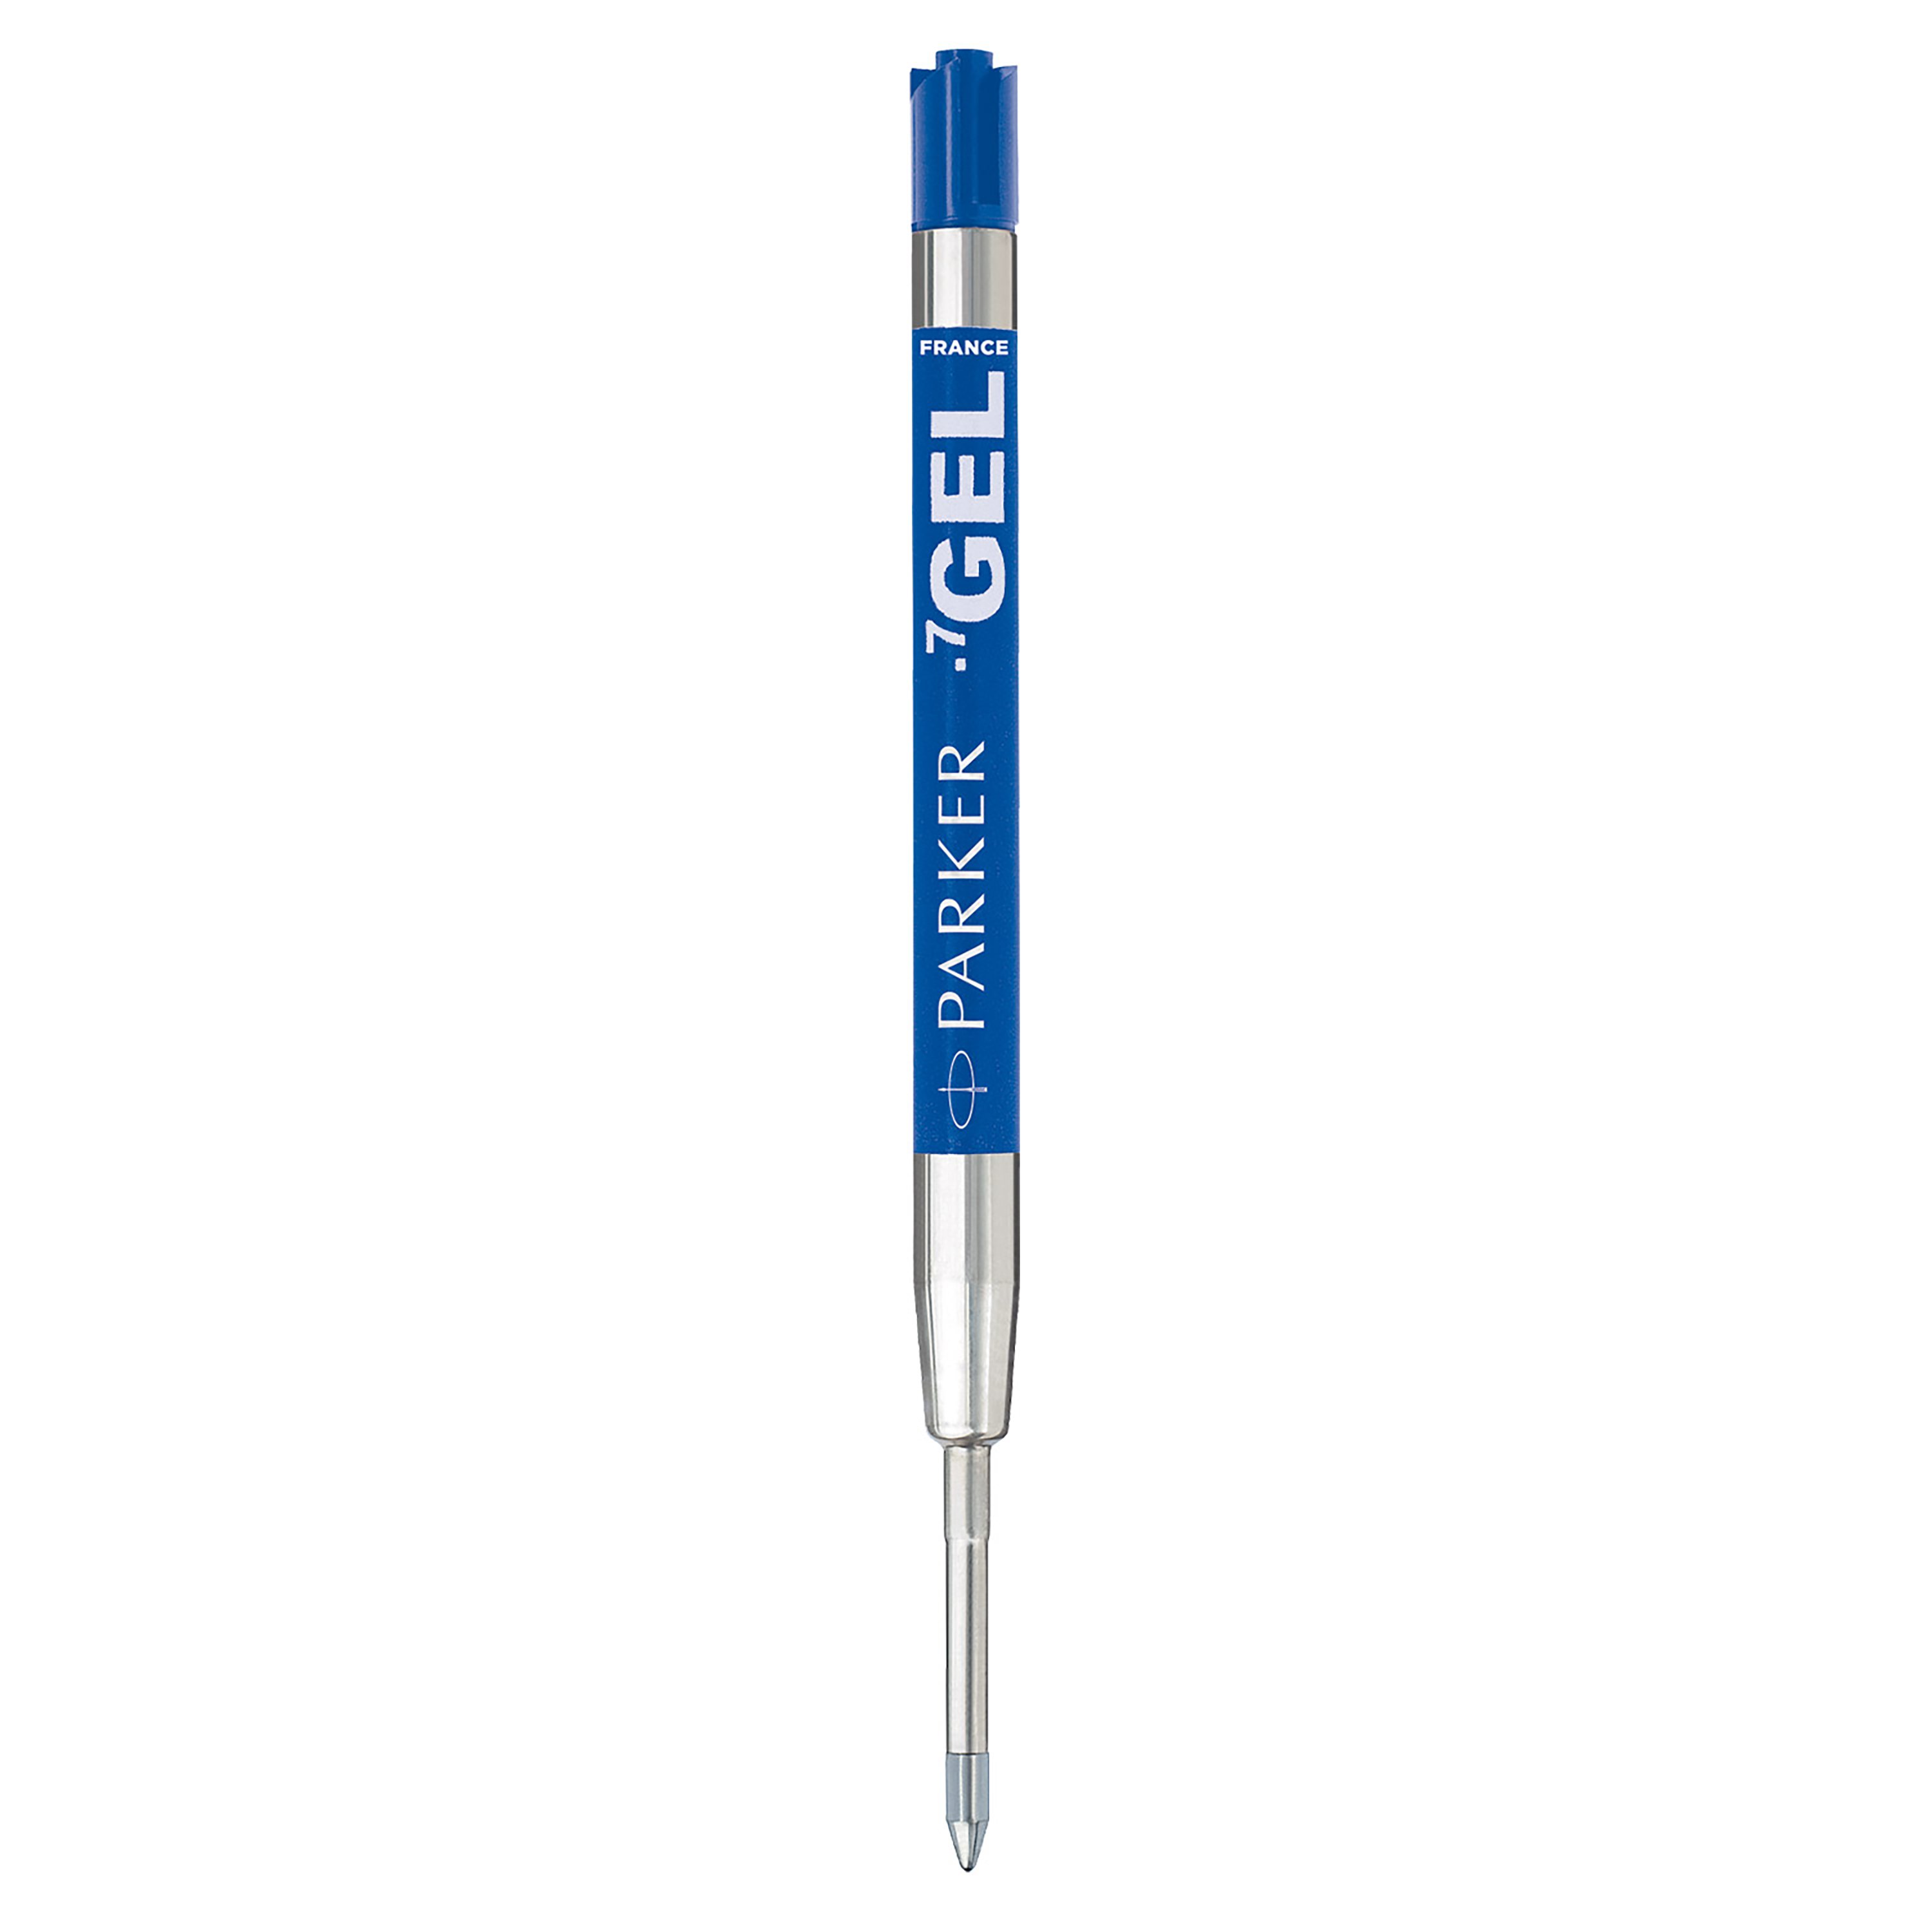 Pack of 2 Parker Gel Ball Pen Refill Medium Nib Blue